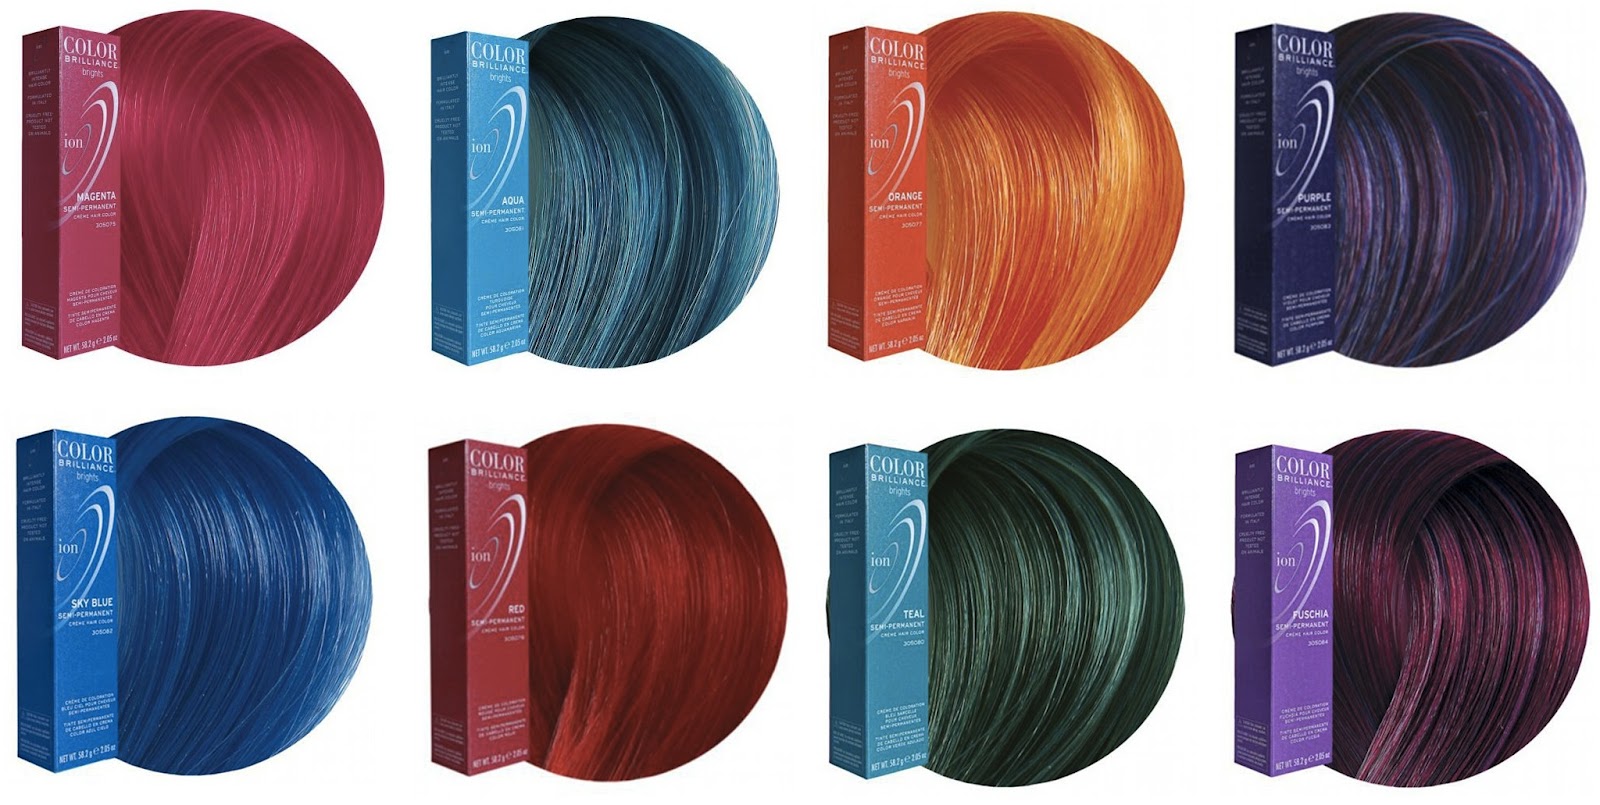 6. Ion Color Brilliance Semi-Permanent Brights Hair Color in Titanium - wide 2